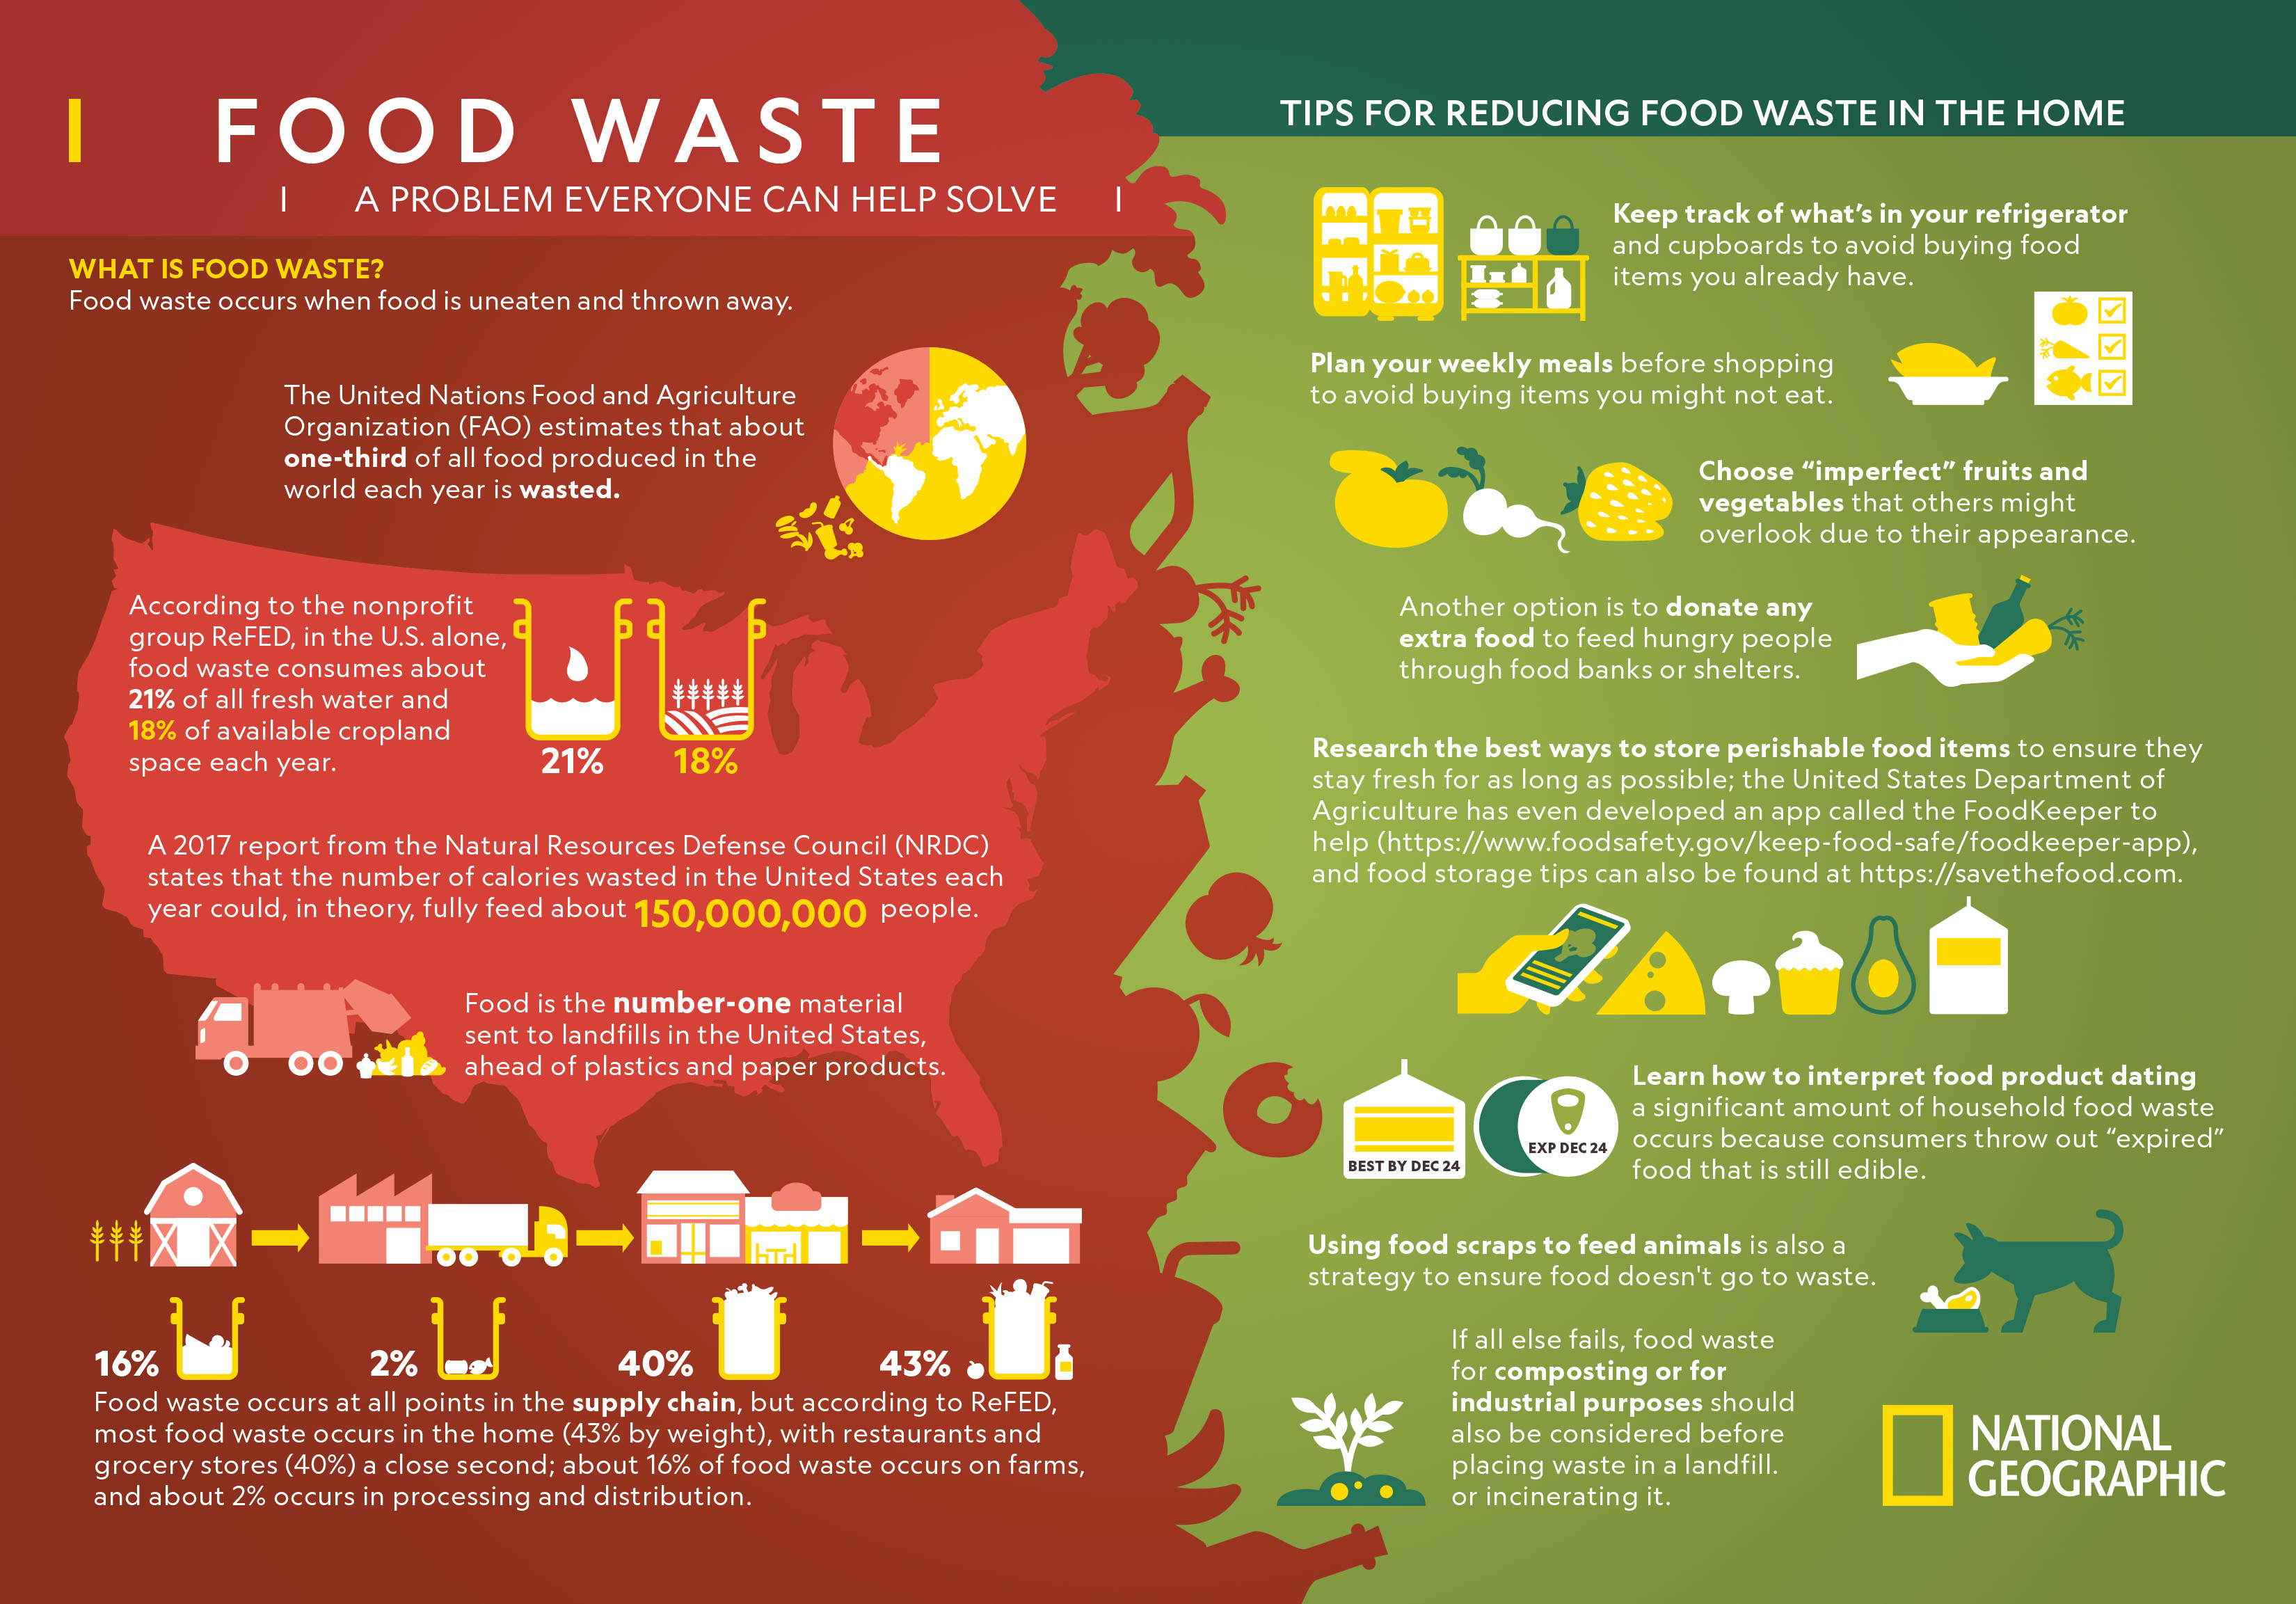 https://images.nationalgeographic.org/image/upload/v1638892340/EducationHub/photos/food-waste.jpg